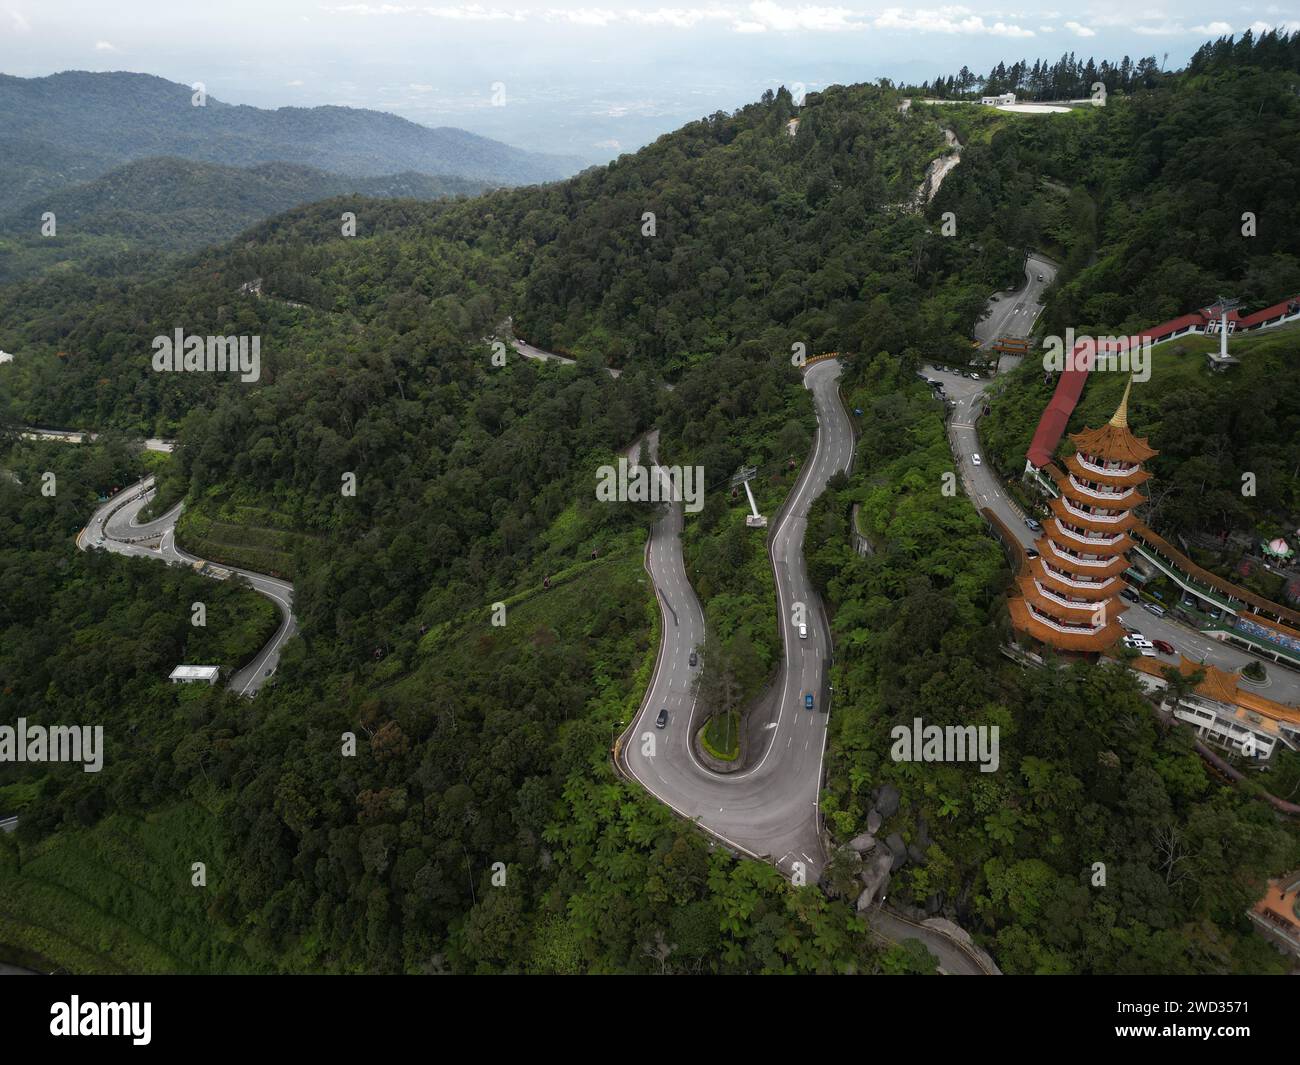 Une vue aérienne du temple Chin Swee dans la région de Genting Highlands en Malaisie Banque D'Images